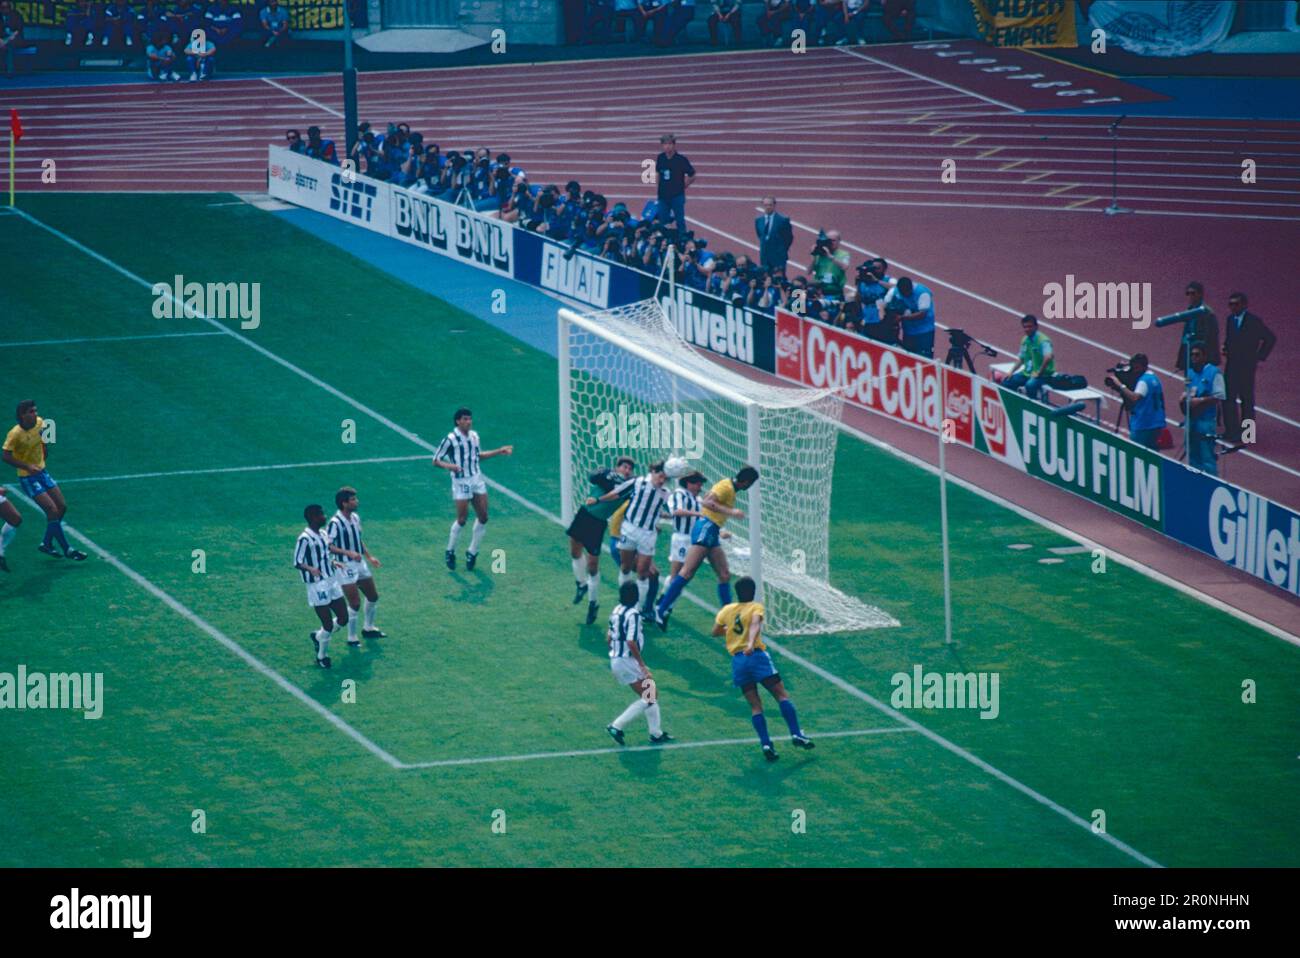 Costa Rica und die brasilianischen Fußballnationalmannschaften spielen um die Weltmeisterschaft, das Delle Alpi Stadium, Turin, Italien 1990 Stockfoto